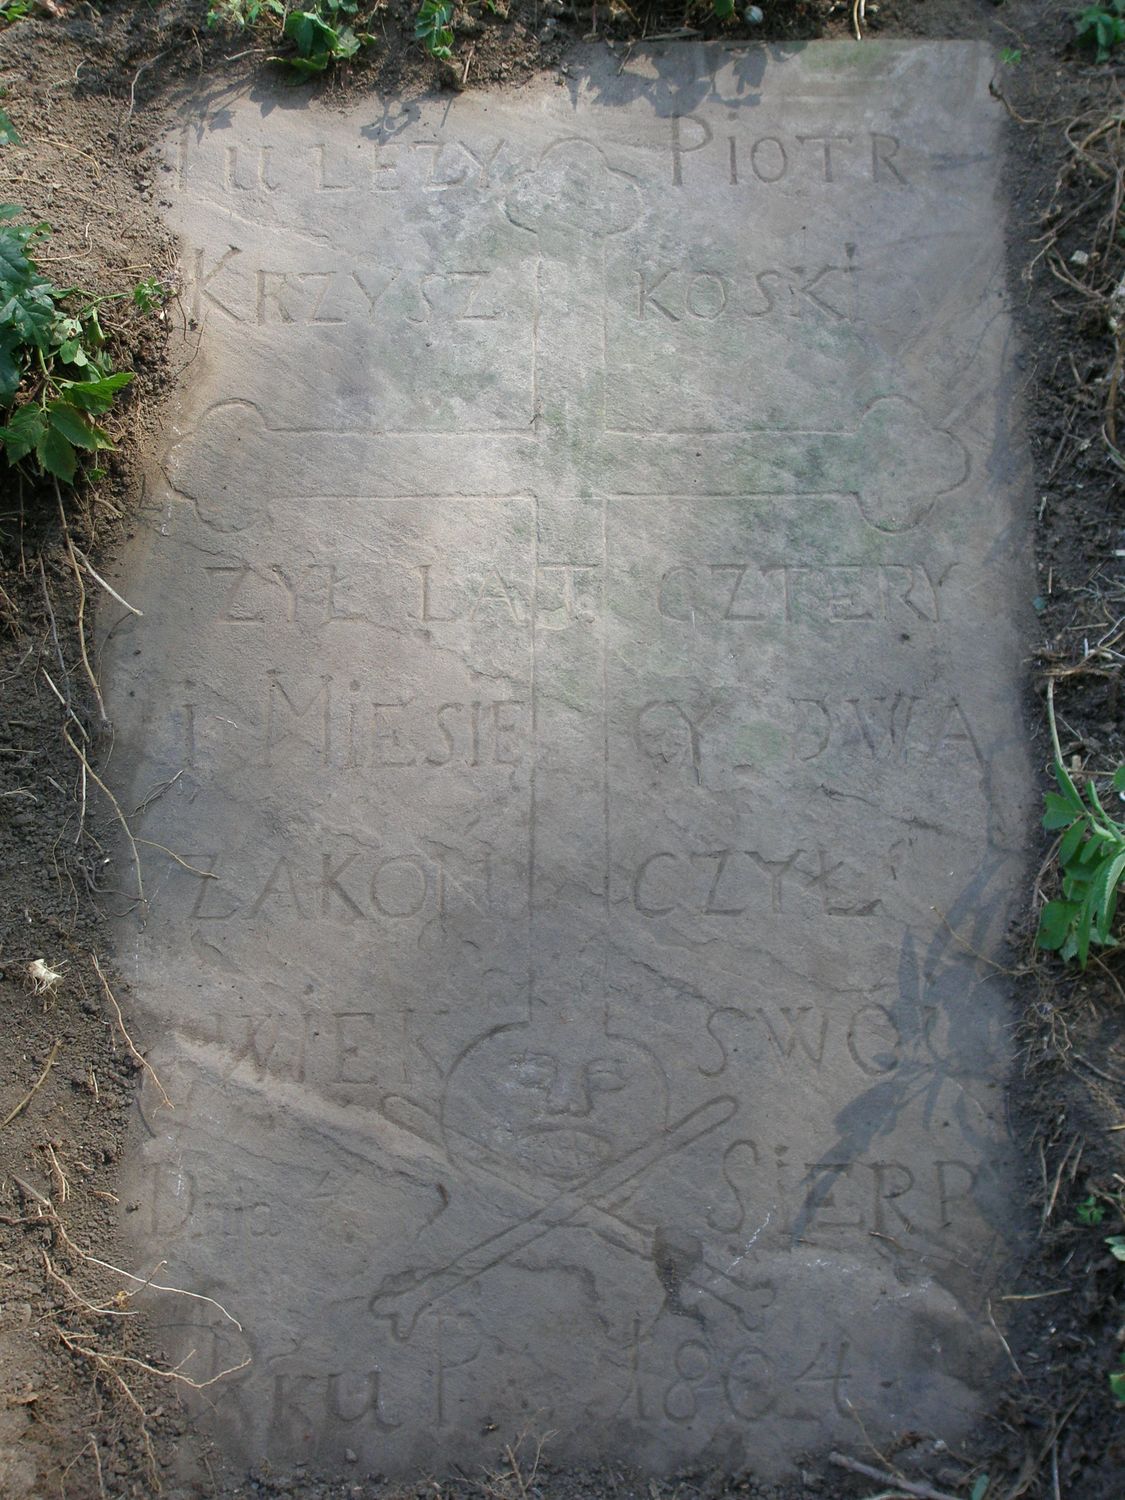 Tombstone of Piotr Krzyszkoski from Buczacz cemetery, state from 2005